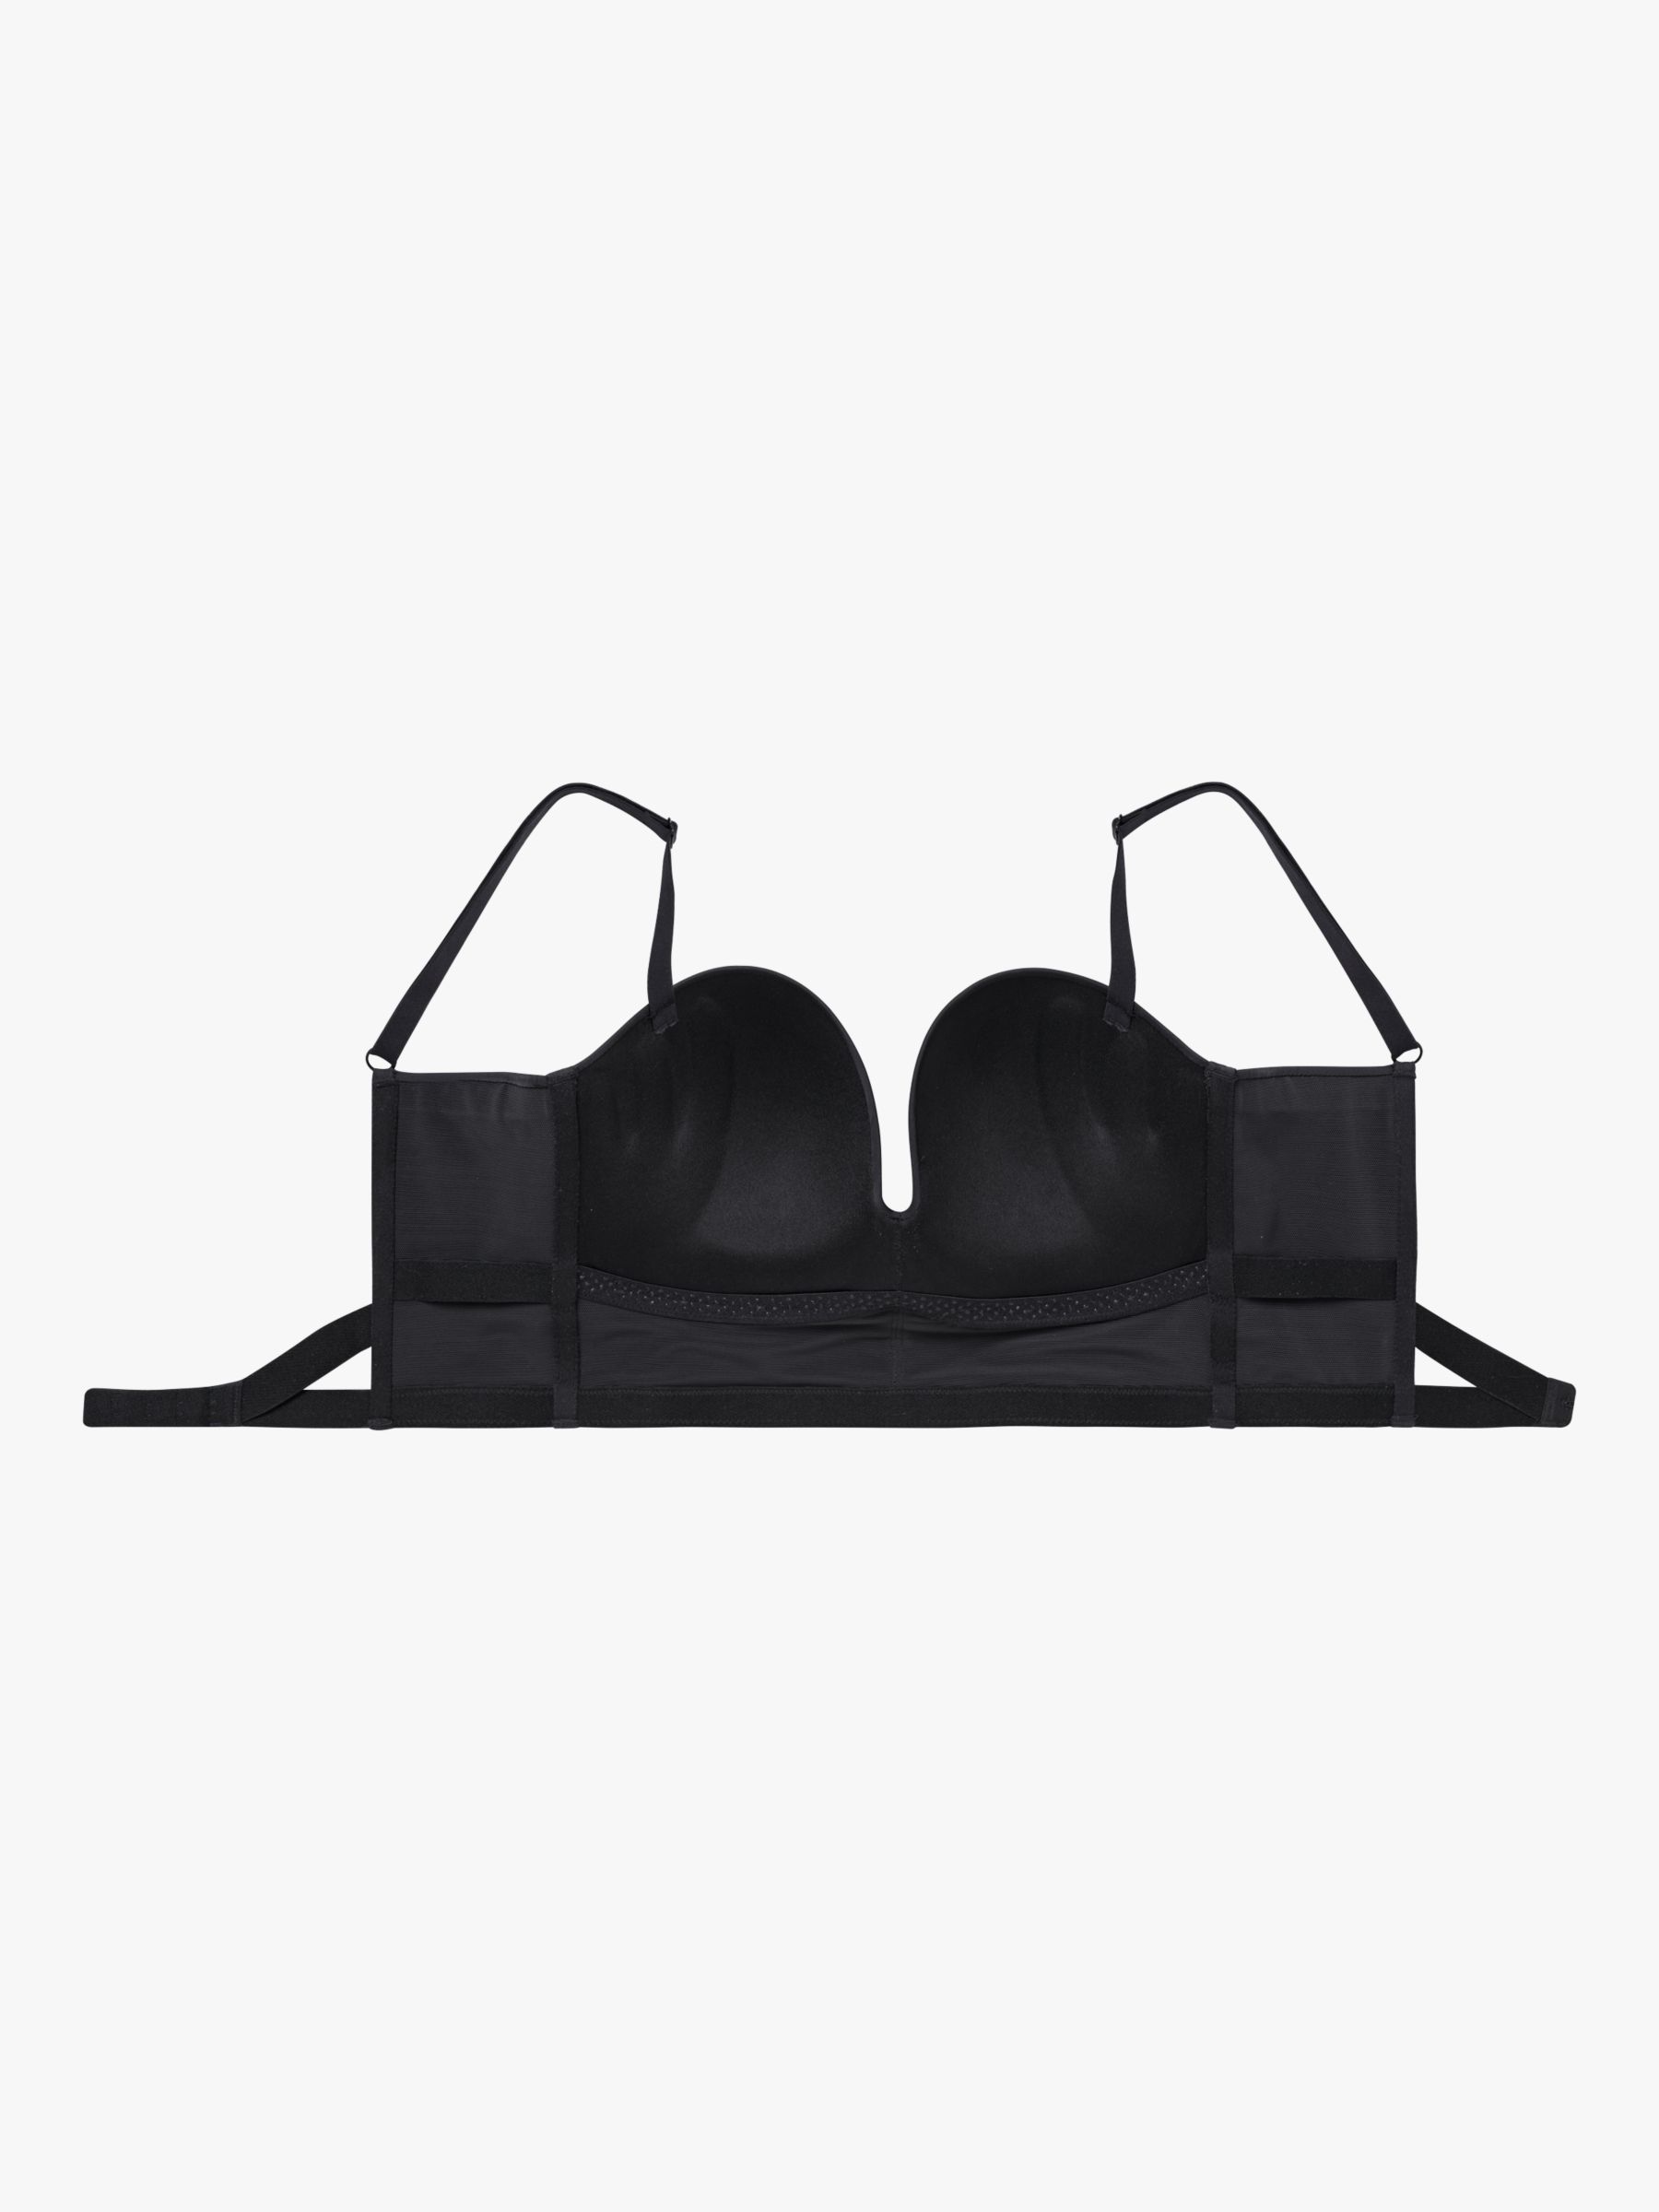 Wonderbra Women's Ultimate Backless Bra, Black, Size 36B: Buy Online at  Best Price in UAE 